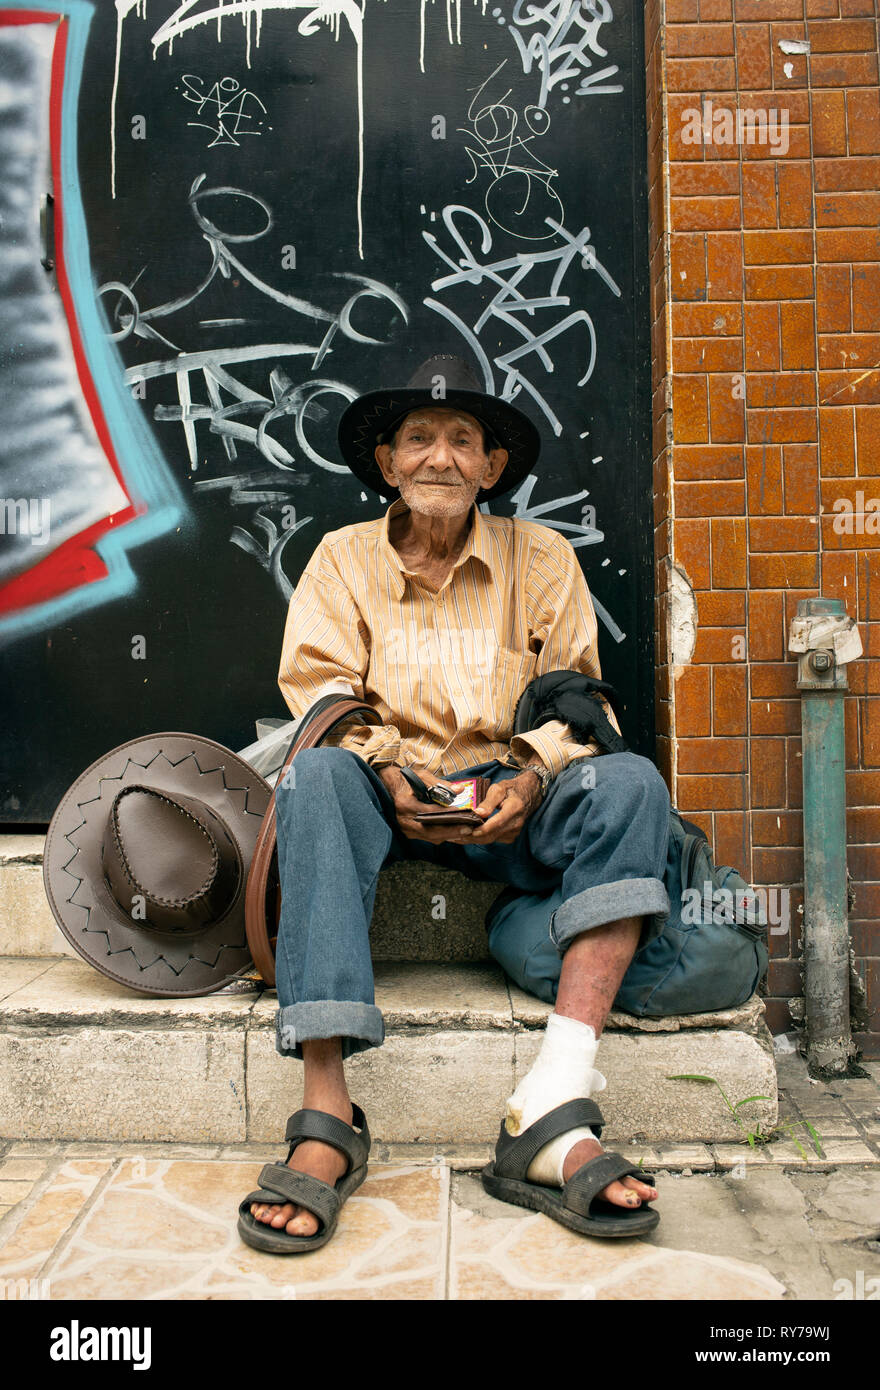 Personnes âgées latino man sitting on stairs. La ville de Panama, Panama. Oct 2018 Banque D'Images